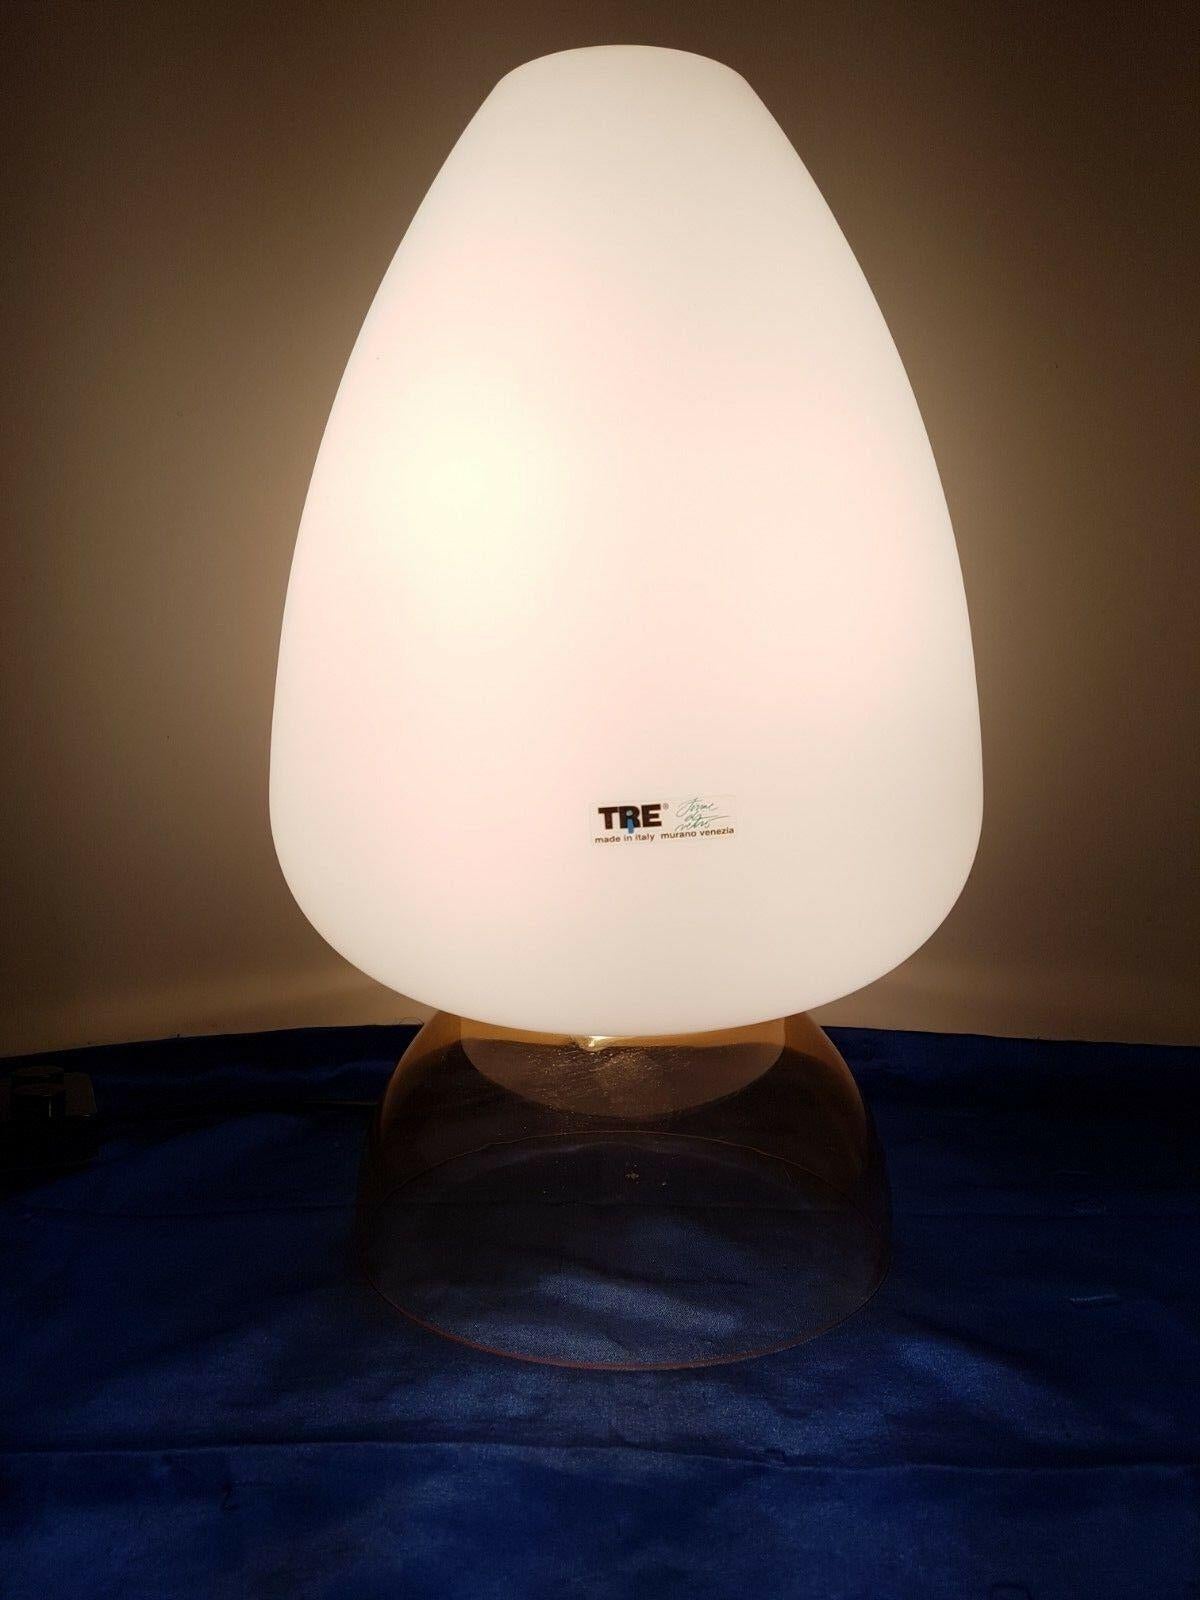 Belle lampe de table de Murano,
vers 1980.
Parfait état, avec son étiquette d'origine
Double éclairage.
Mesures : 48 cm de haut / 28 cm de large.
890 euros.